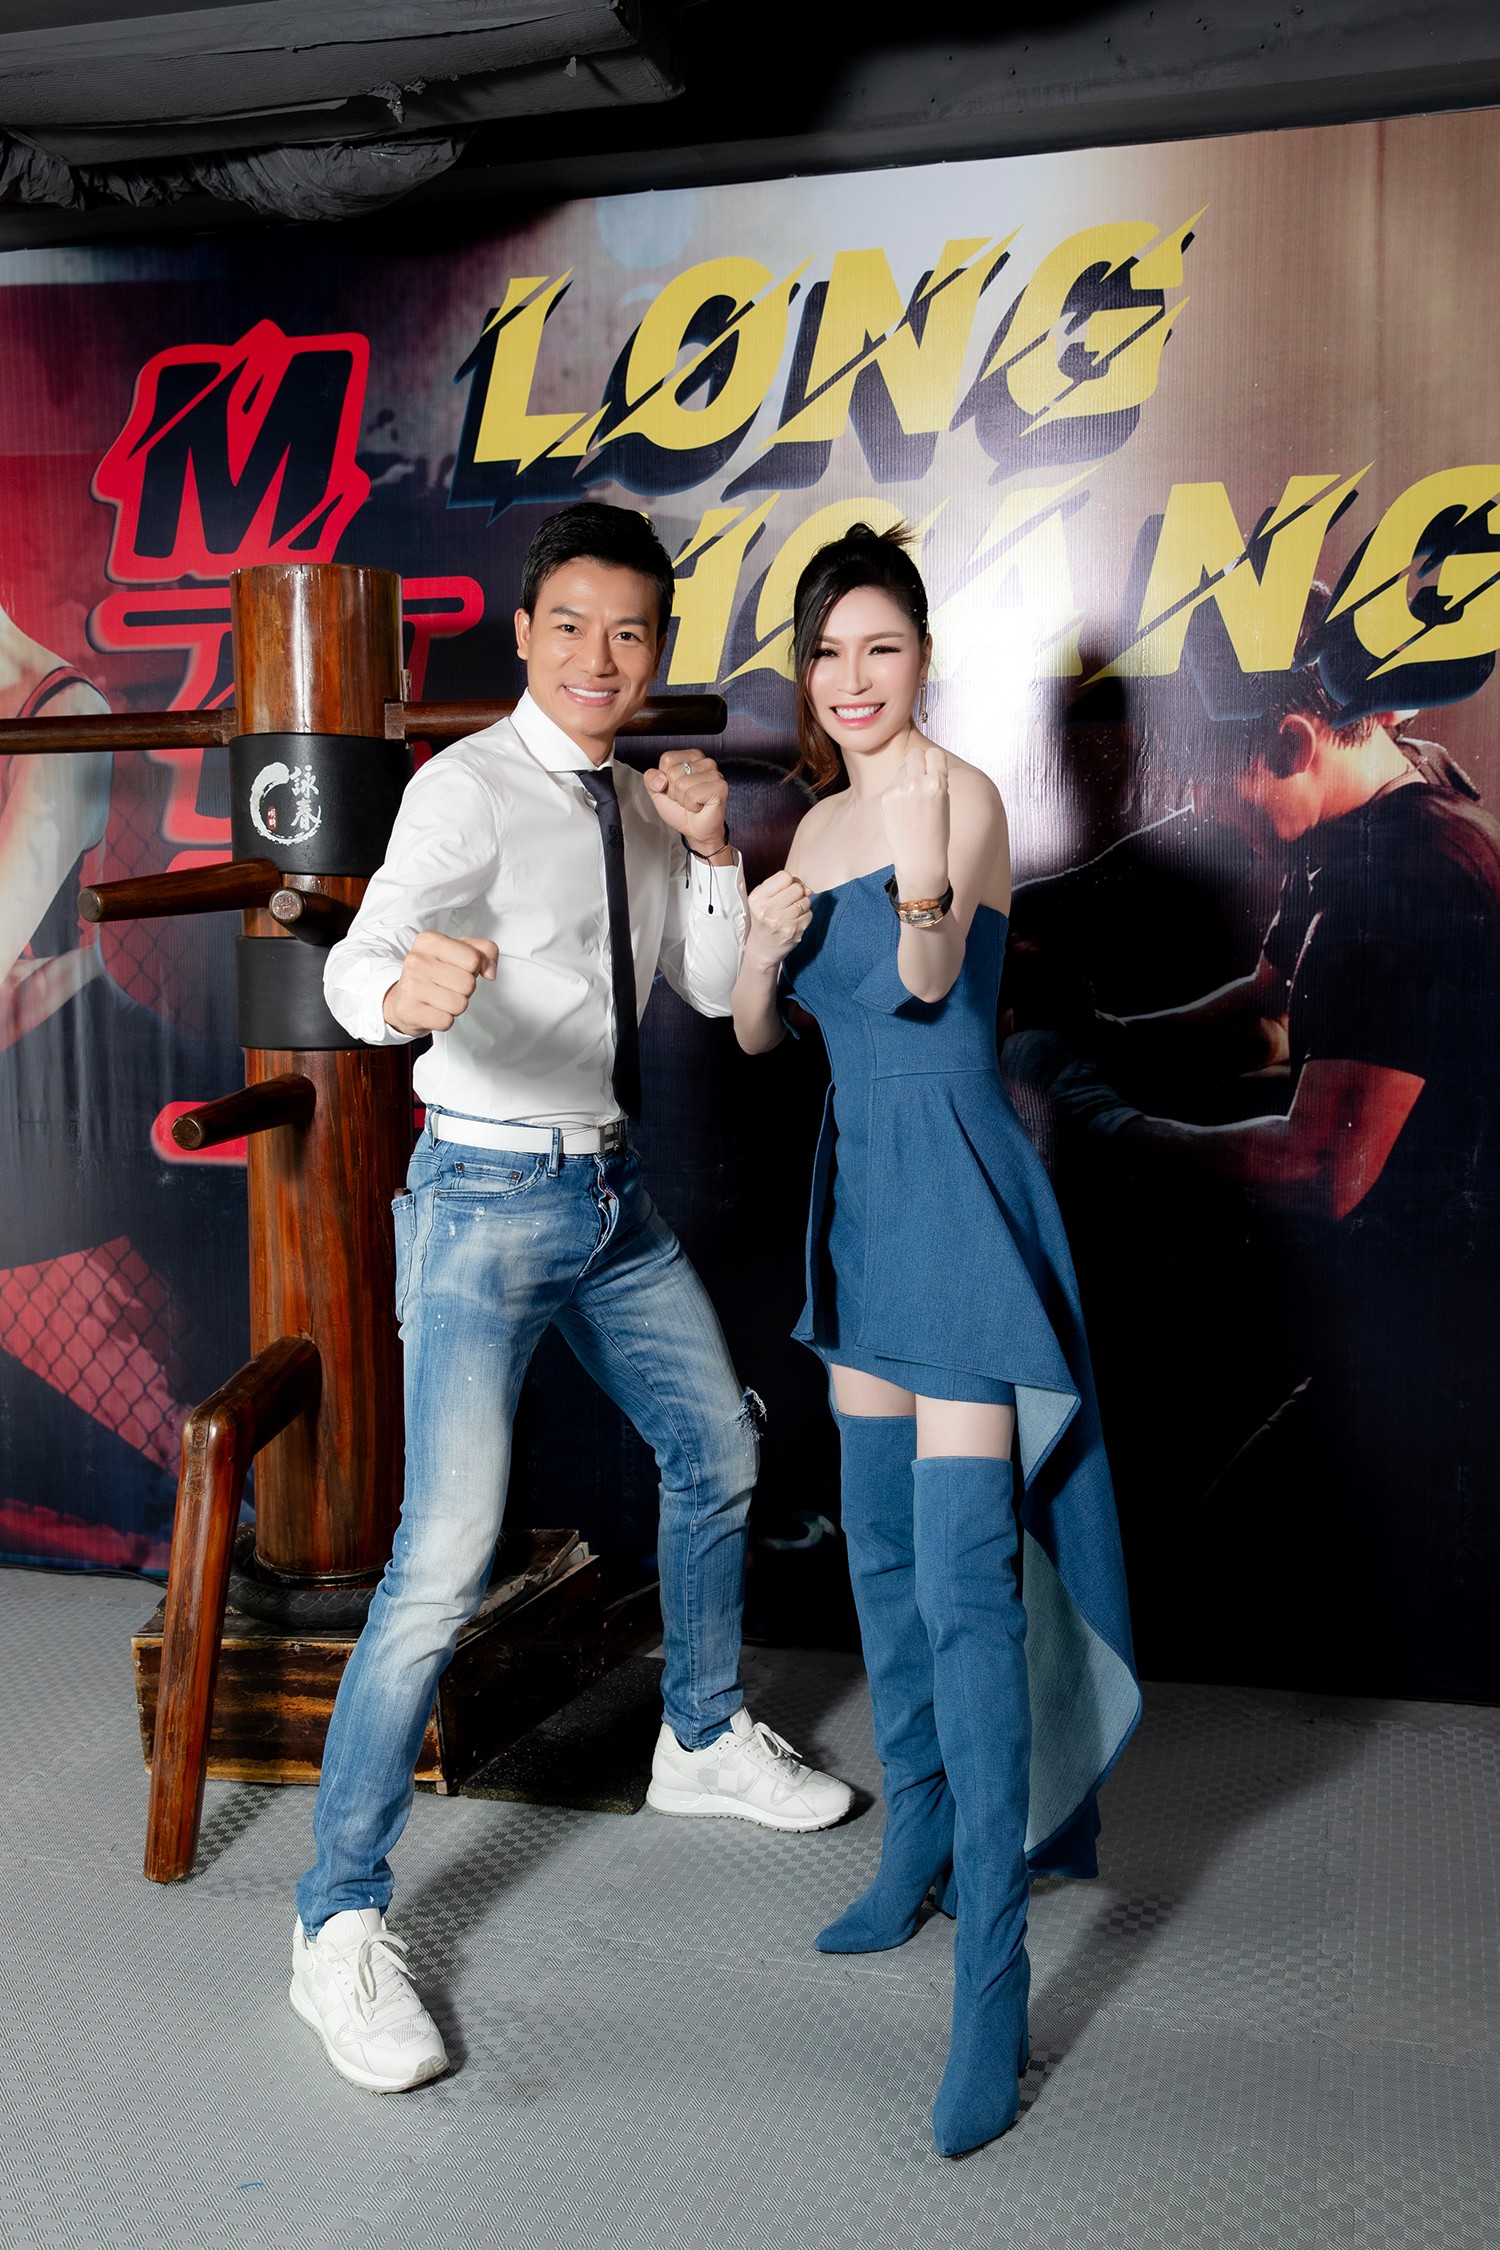 Hoa hậu Bùi Thi Hà cùng "Chú bảo vệ" tập đoàn Long Hoàng ra mắt Võ đường - 7